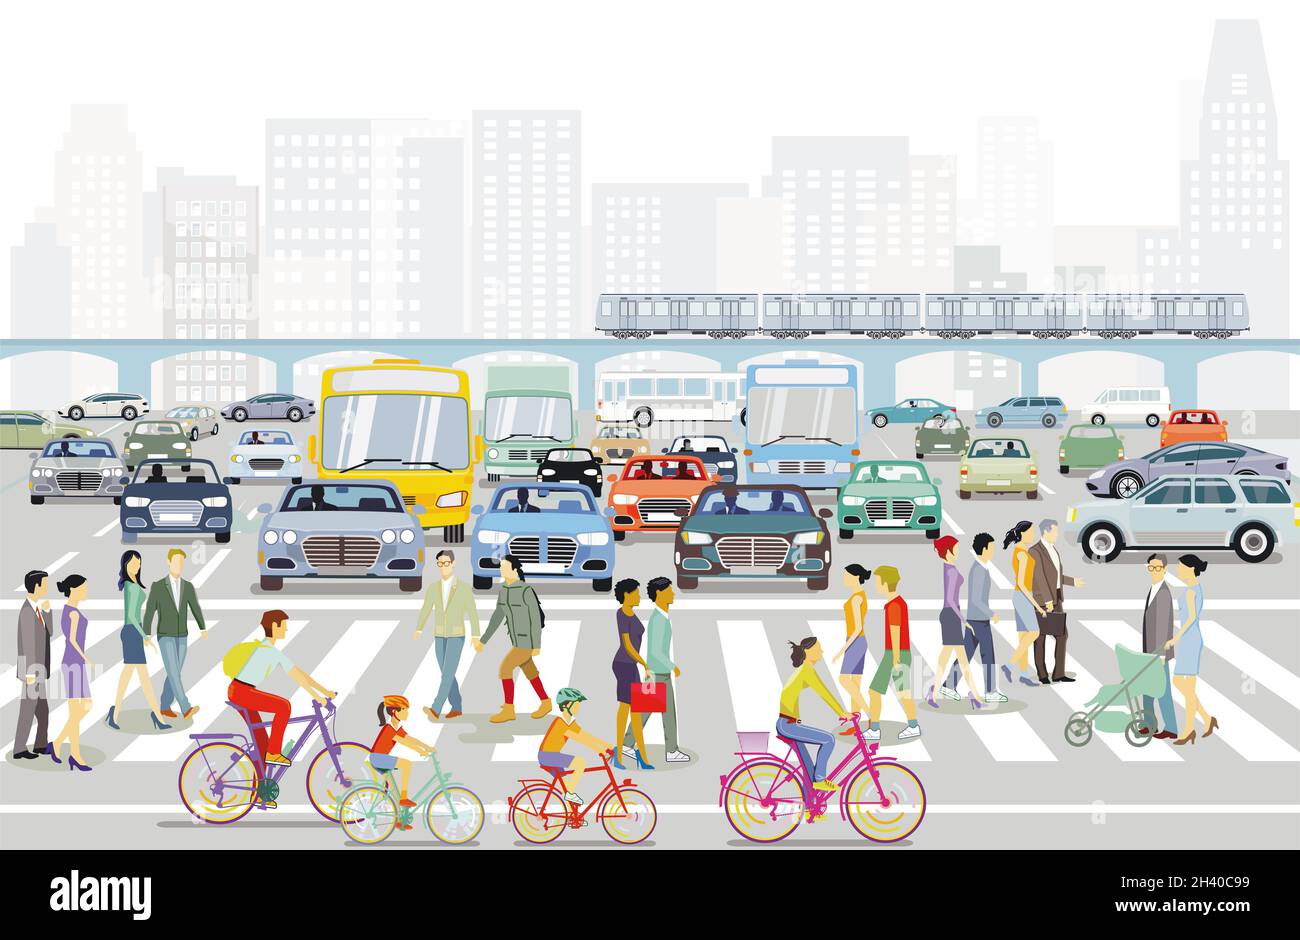 Silueta de la ciudad con intersección en una ciudad y gente en la acera, ilustración Foto de stock